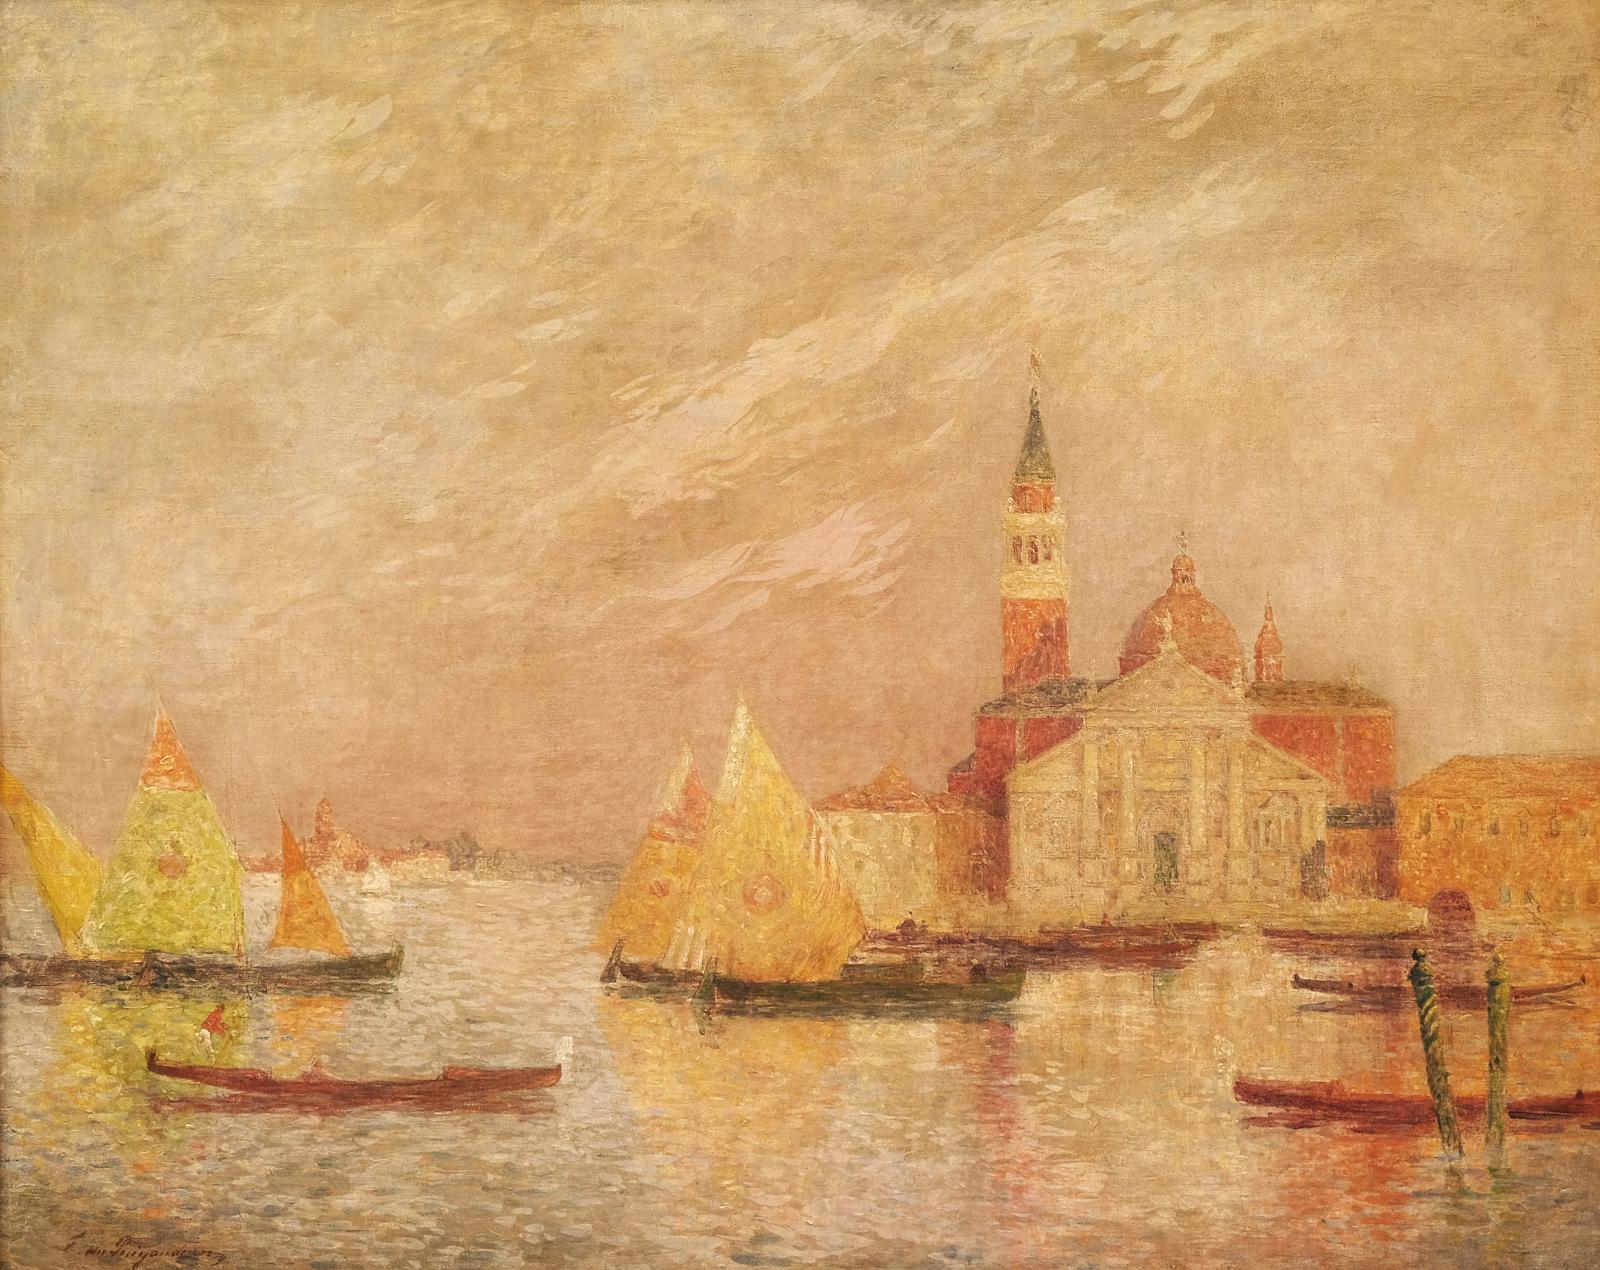 La toile Venise, voile jaune à l’entrée du Grand Canal (65 x 81 cm), brossée par Ferdinand Loyen du Puigaudeau (1864-1930),rappelle que l’artiste bret